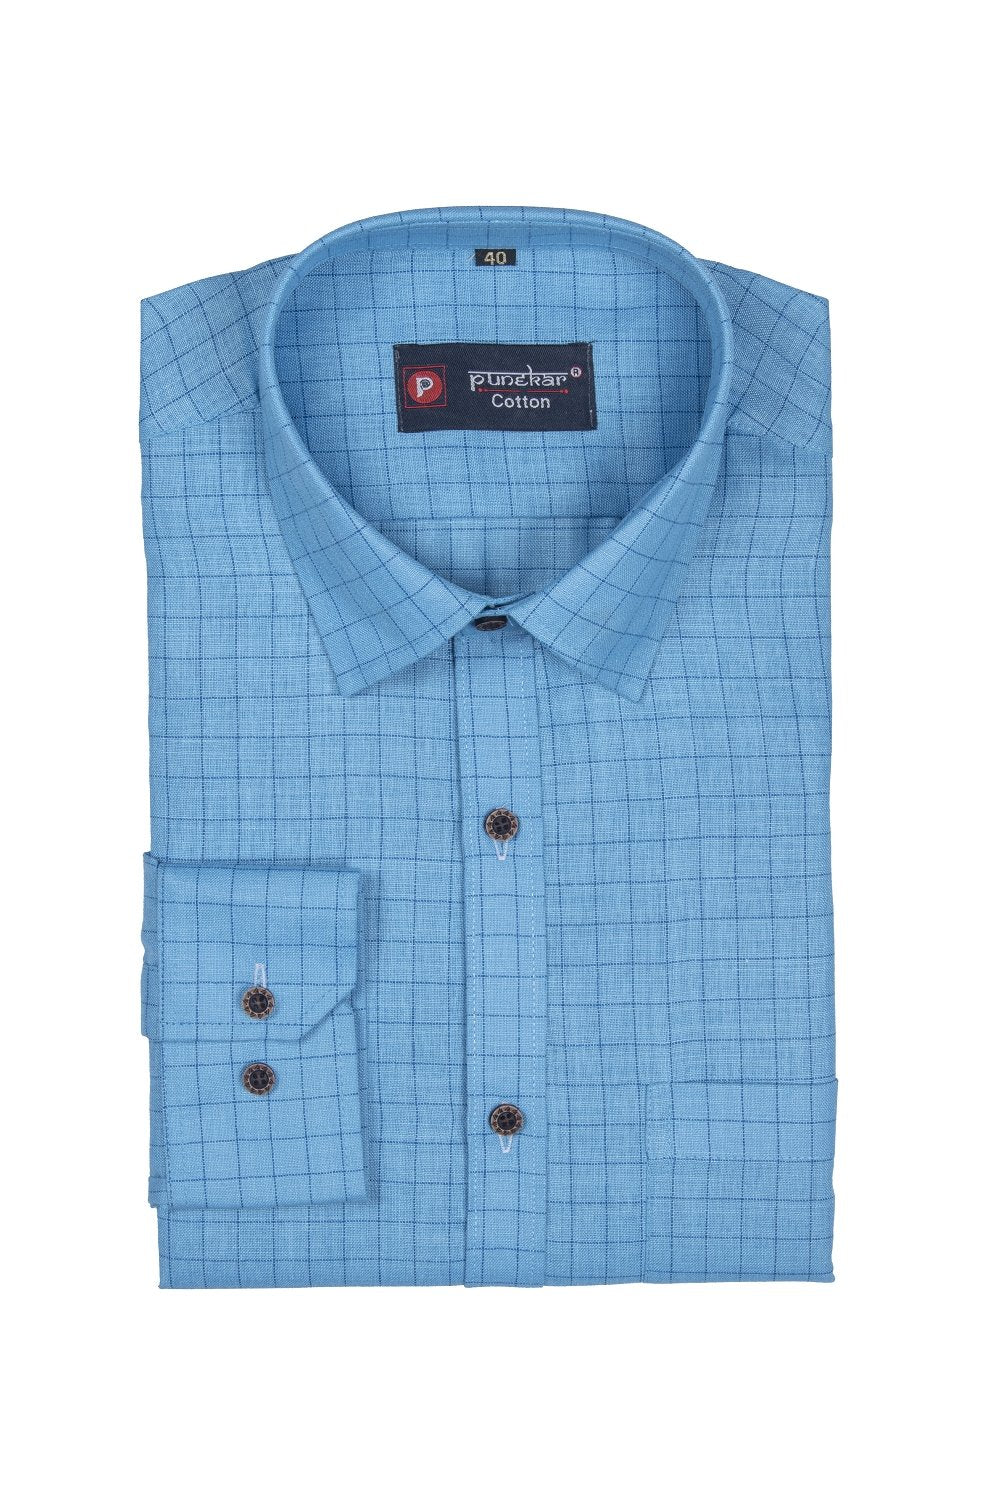 Punekar Cotton Light Blue Color Check Criss Cross Woven Cotton Shirt for Men&